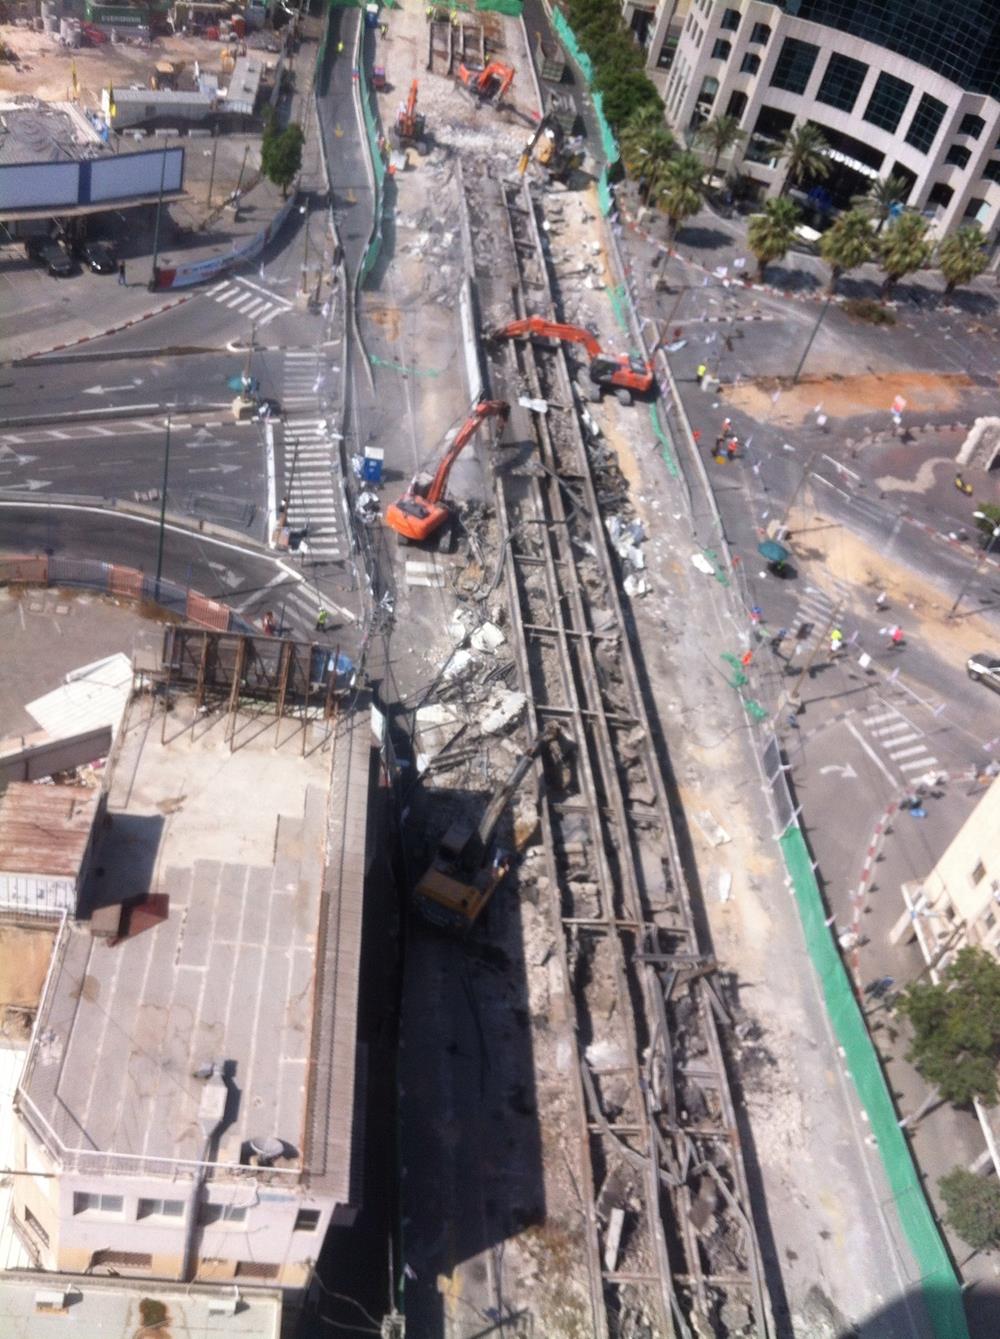 August 29th 2015 – Ma’ariv bridge explosion, Tel Aviv, Israel